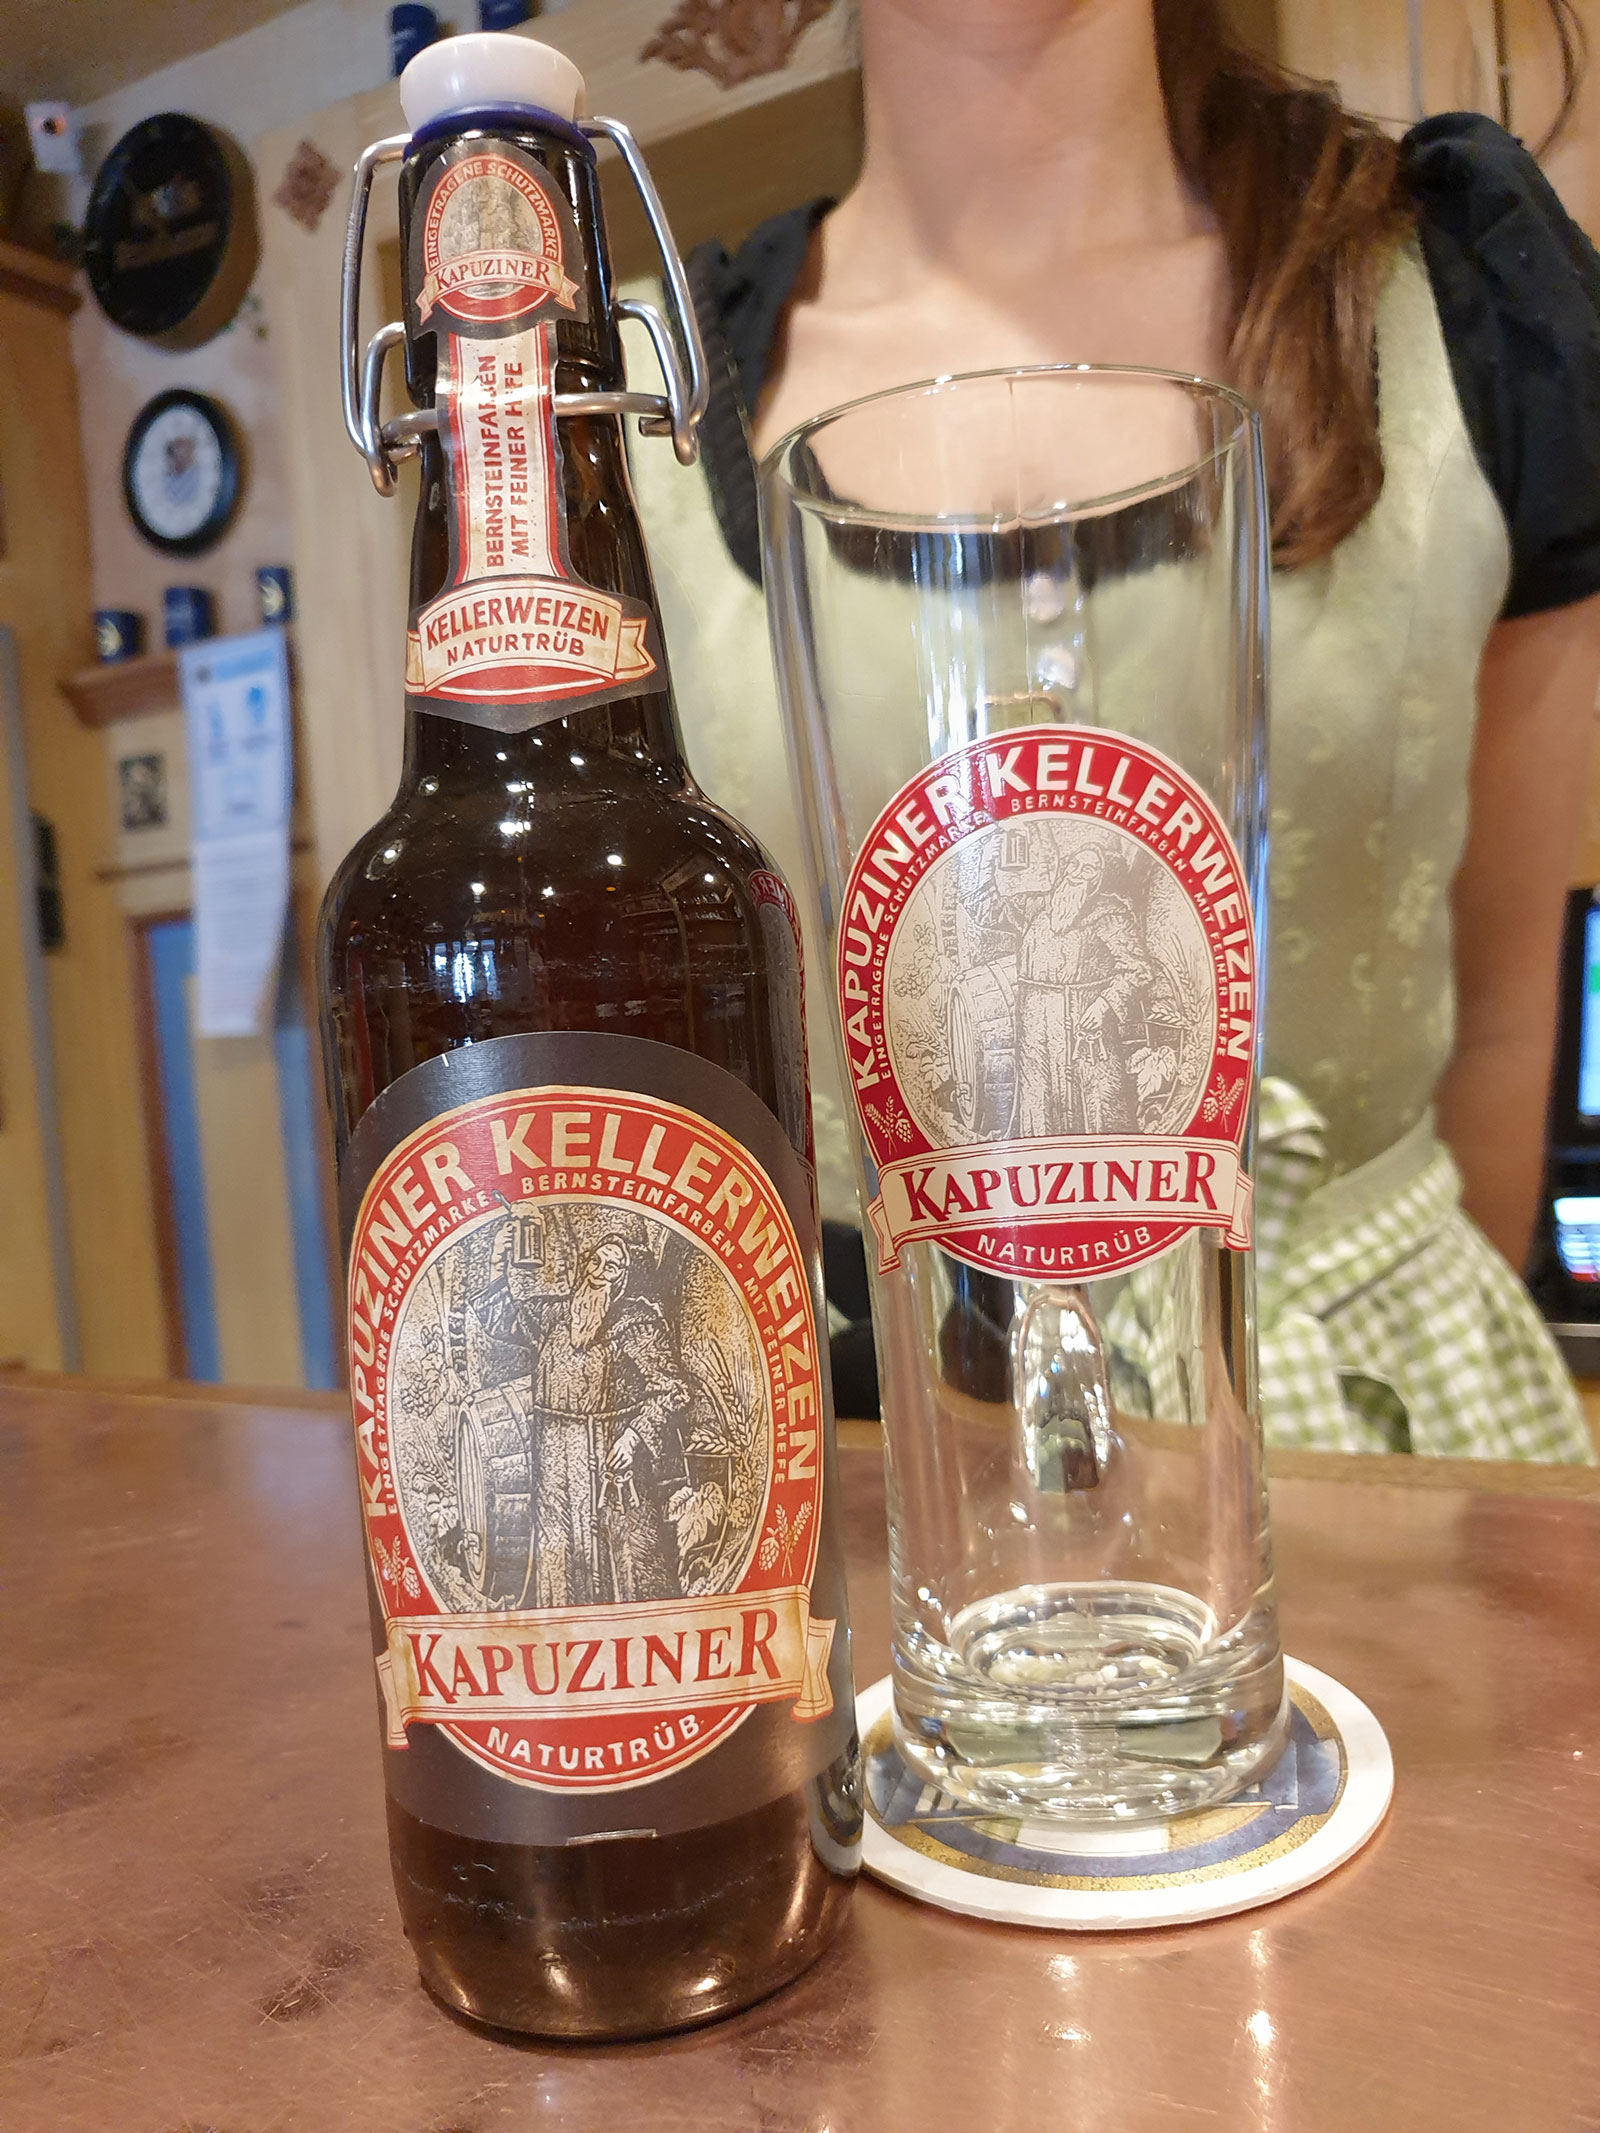 Kapuziner Restaurant - Bottled beers - KAPUZINER